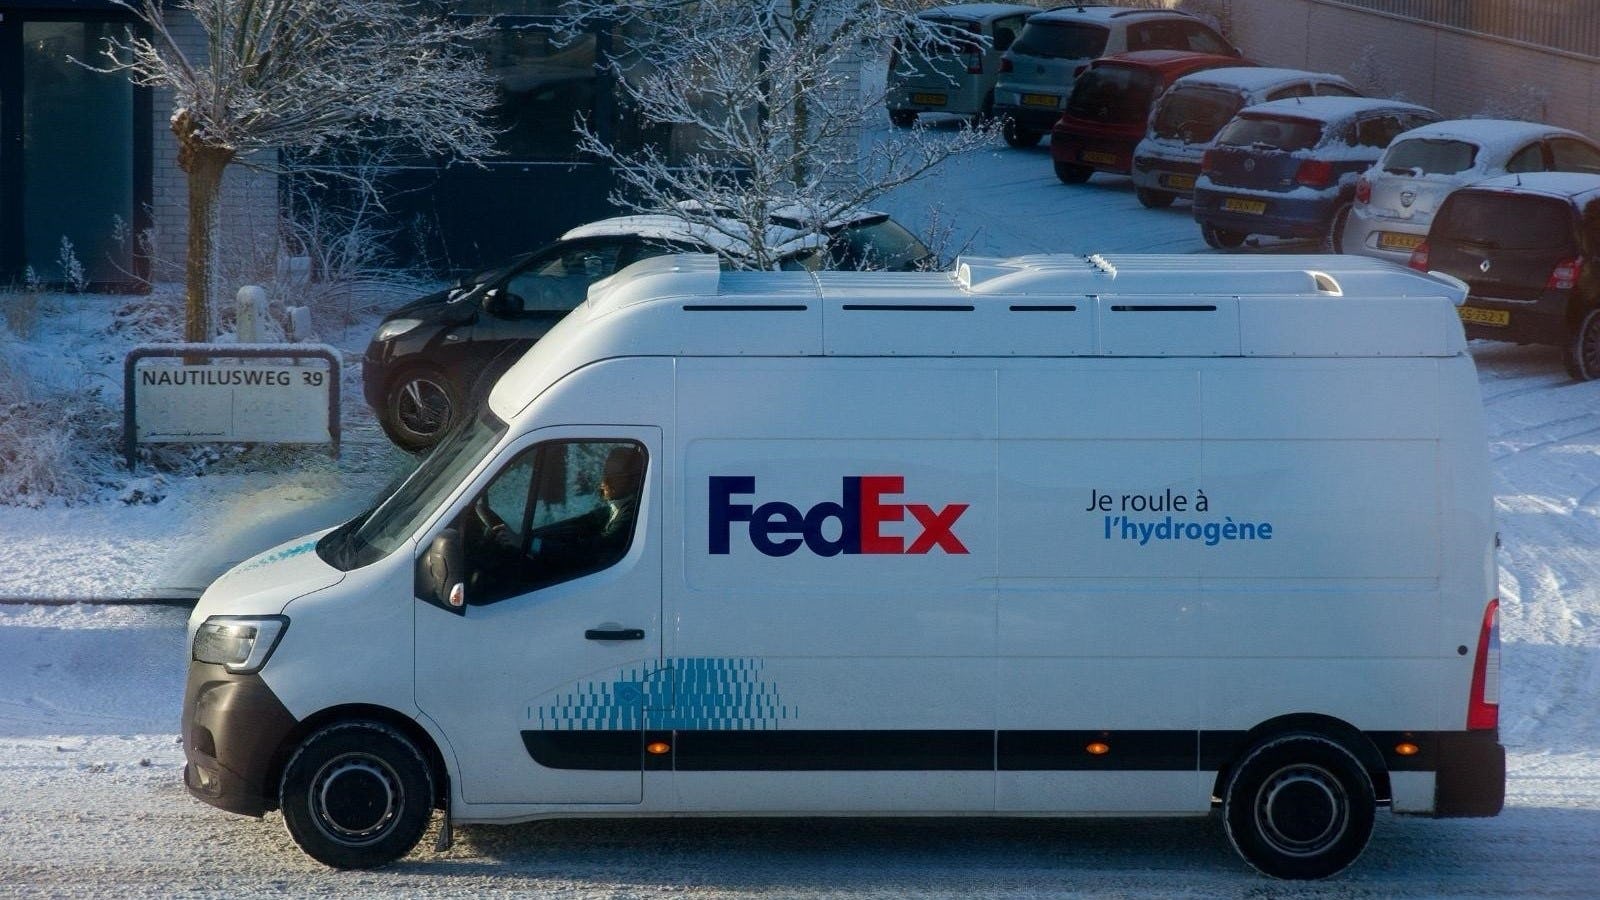 FedEx test bezorging op waterstof in Utrecht